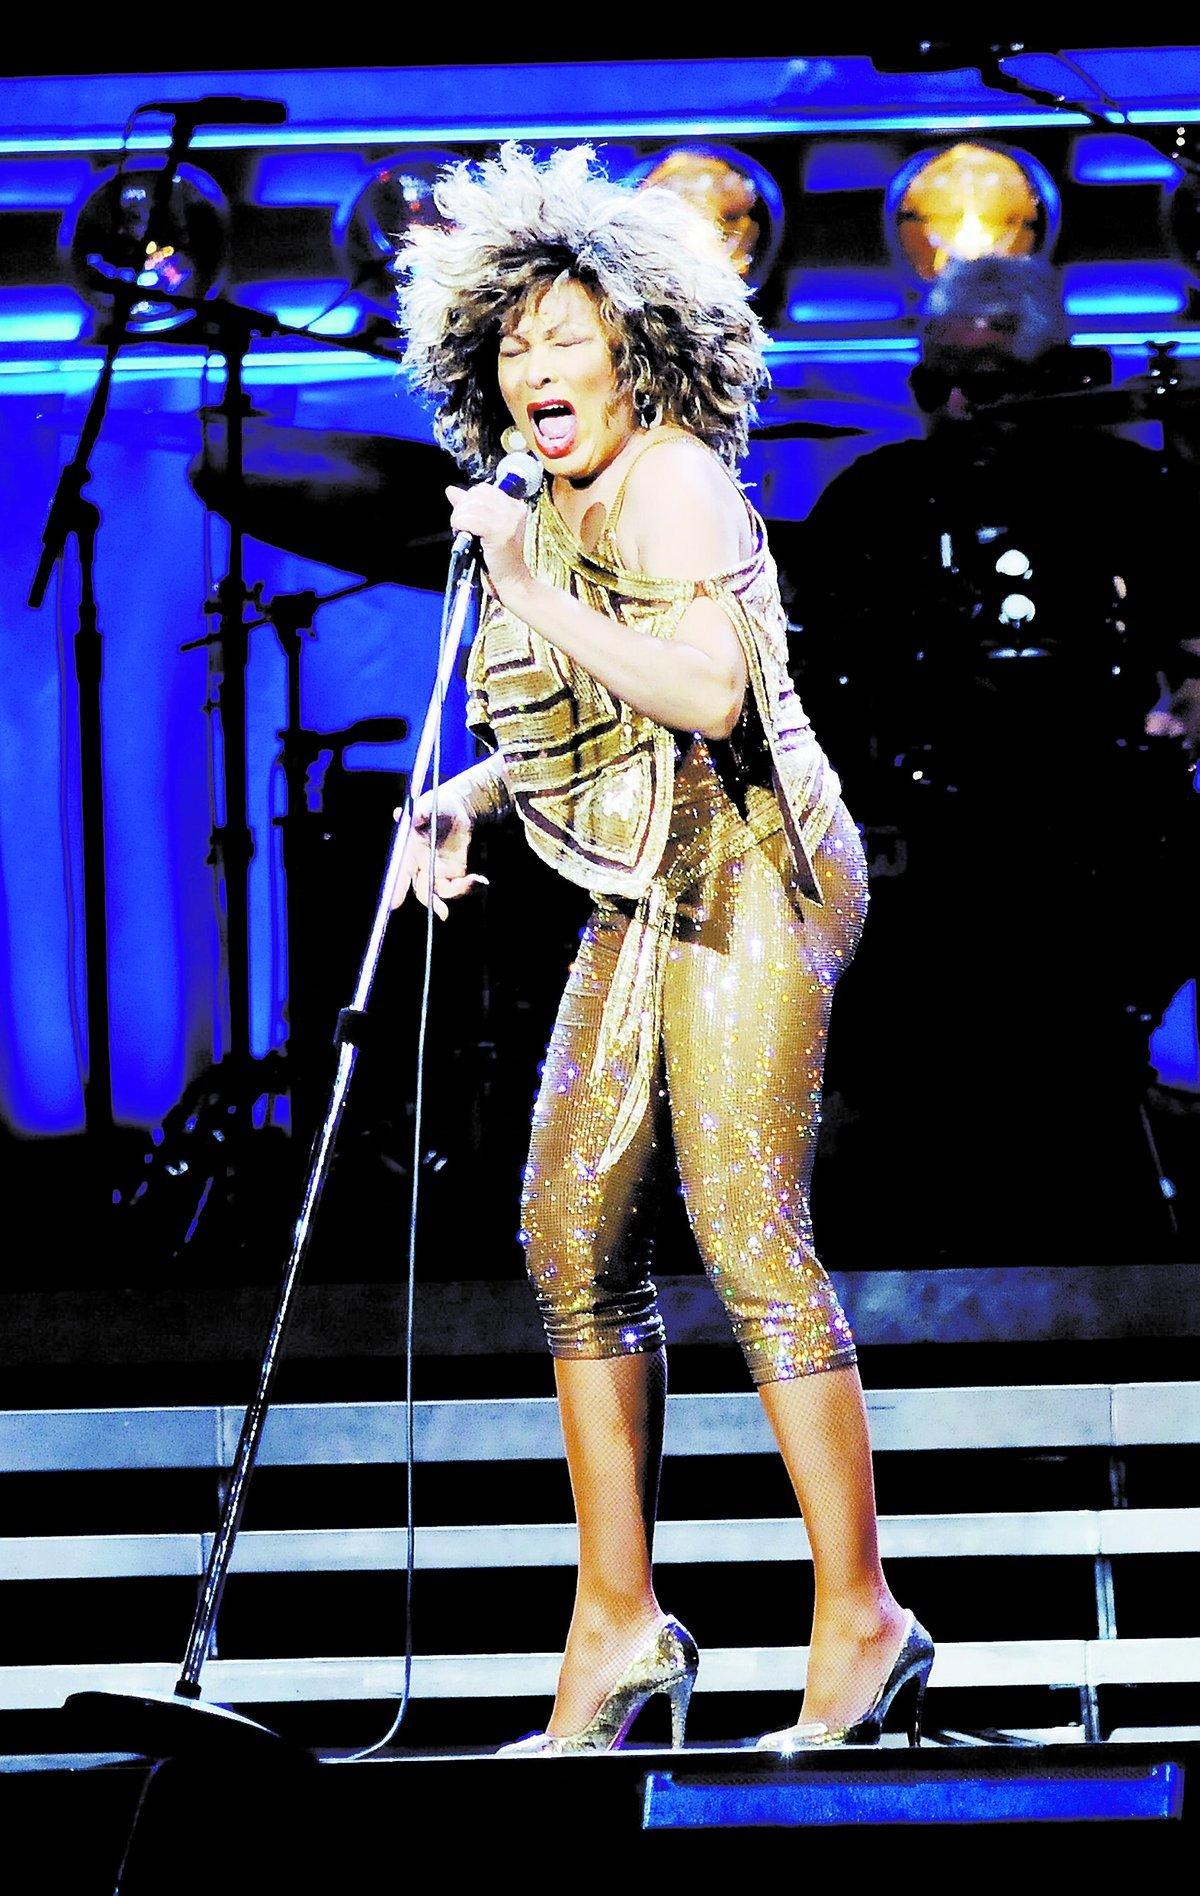 Tina Turner är i högform och visar att hon fortfarande gör skäl för att kallas ”Queen of rock’n’roll”. Det är samma glöd som på 80-talet när hon sjunger sina stora hitlåtar.